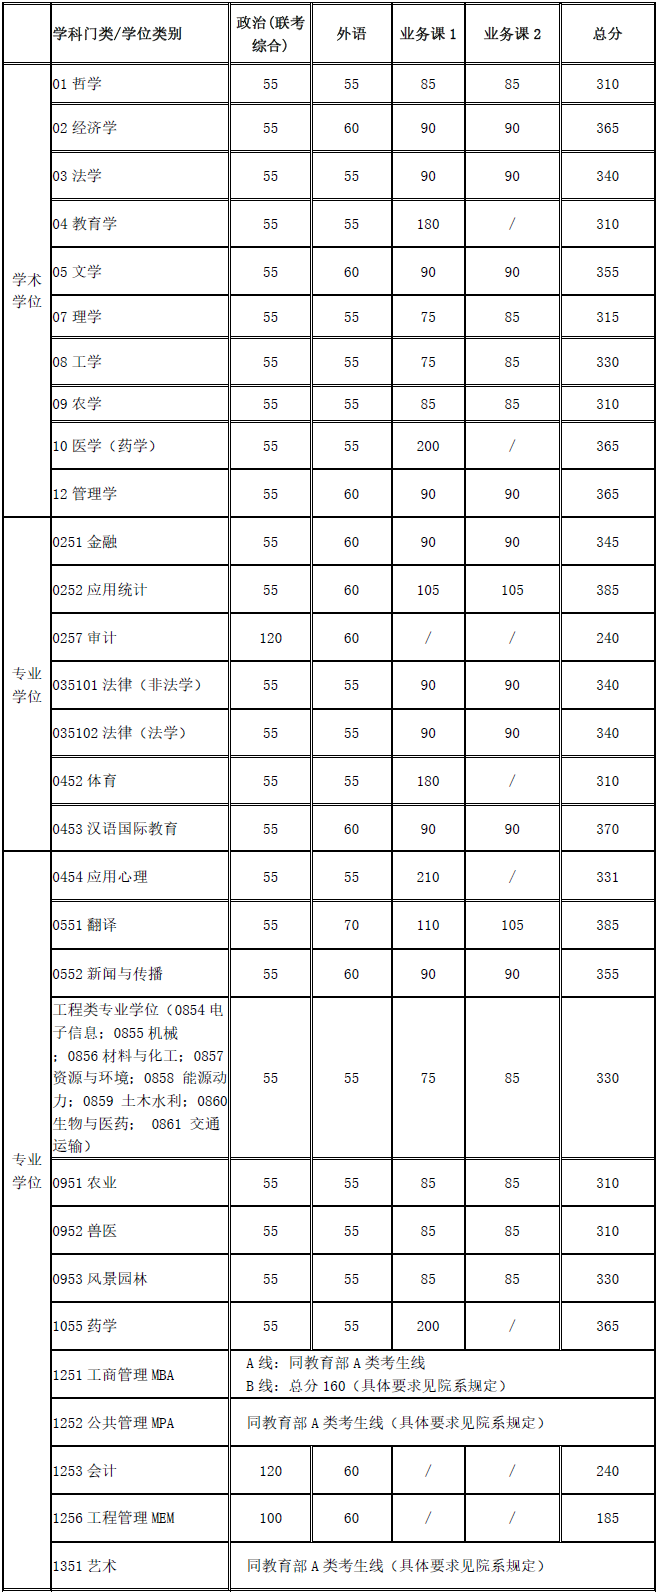 上海交通大学2020年考研复试分数线